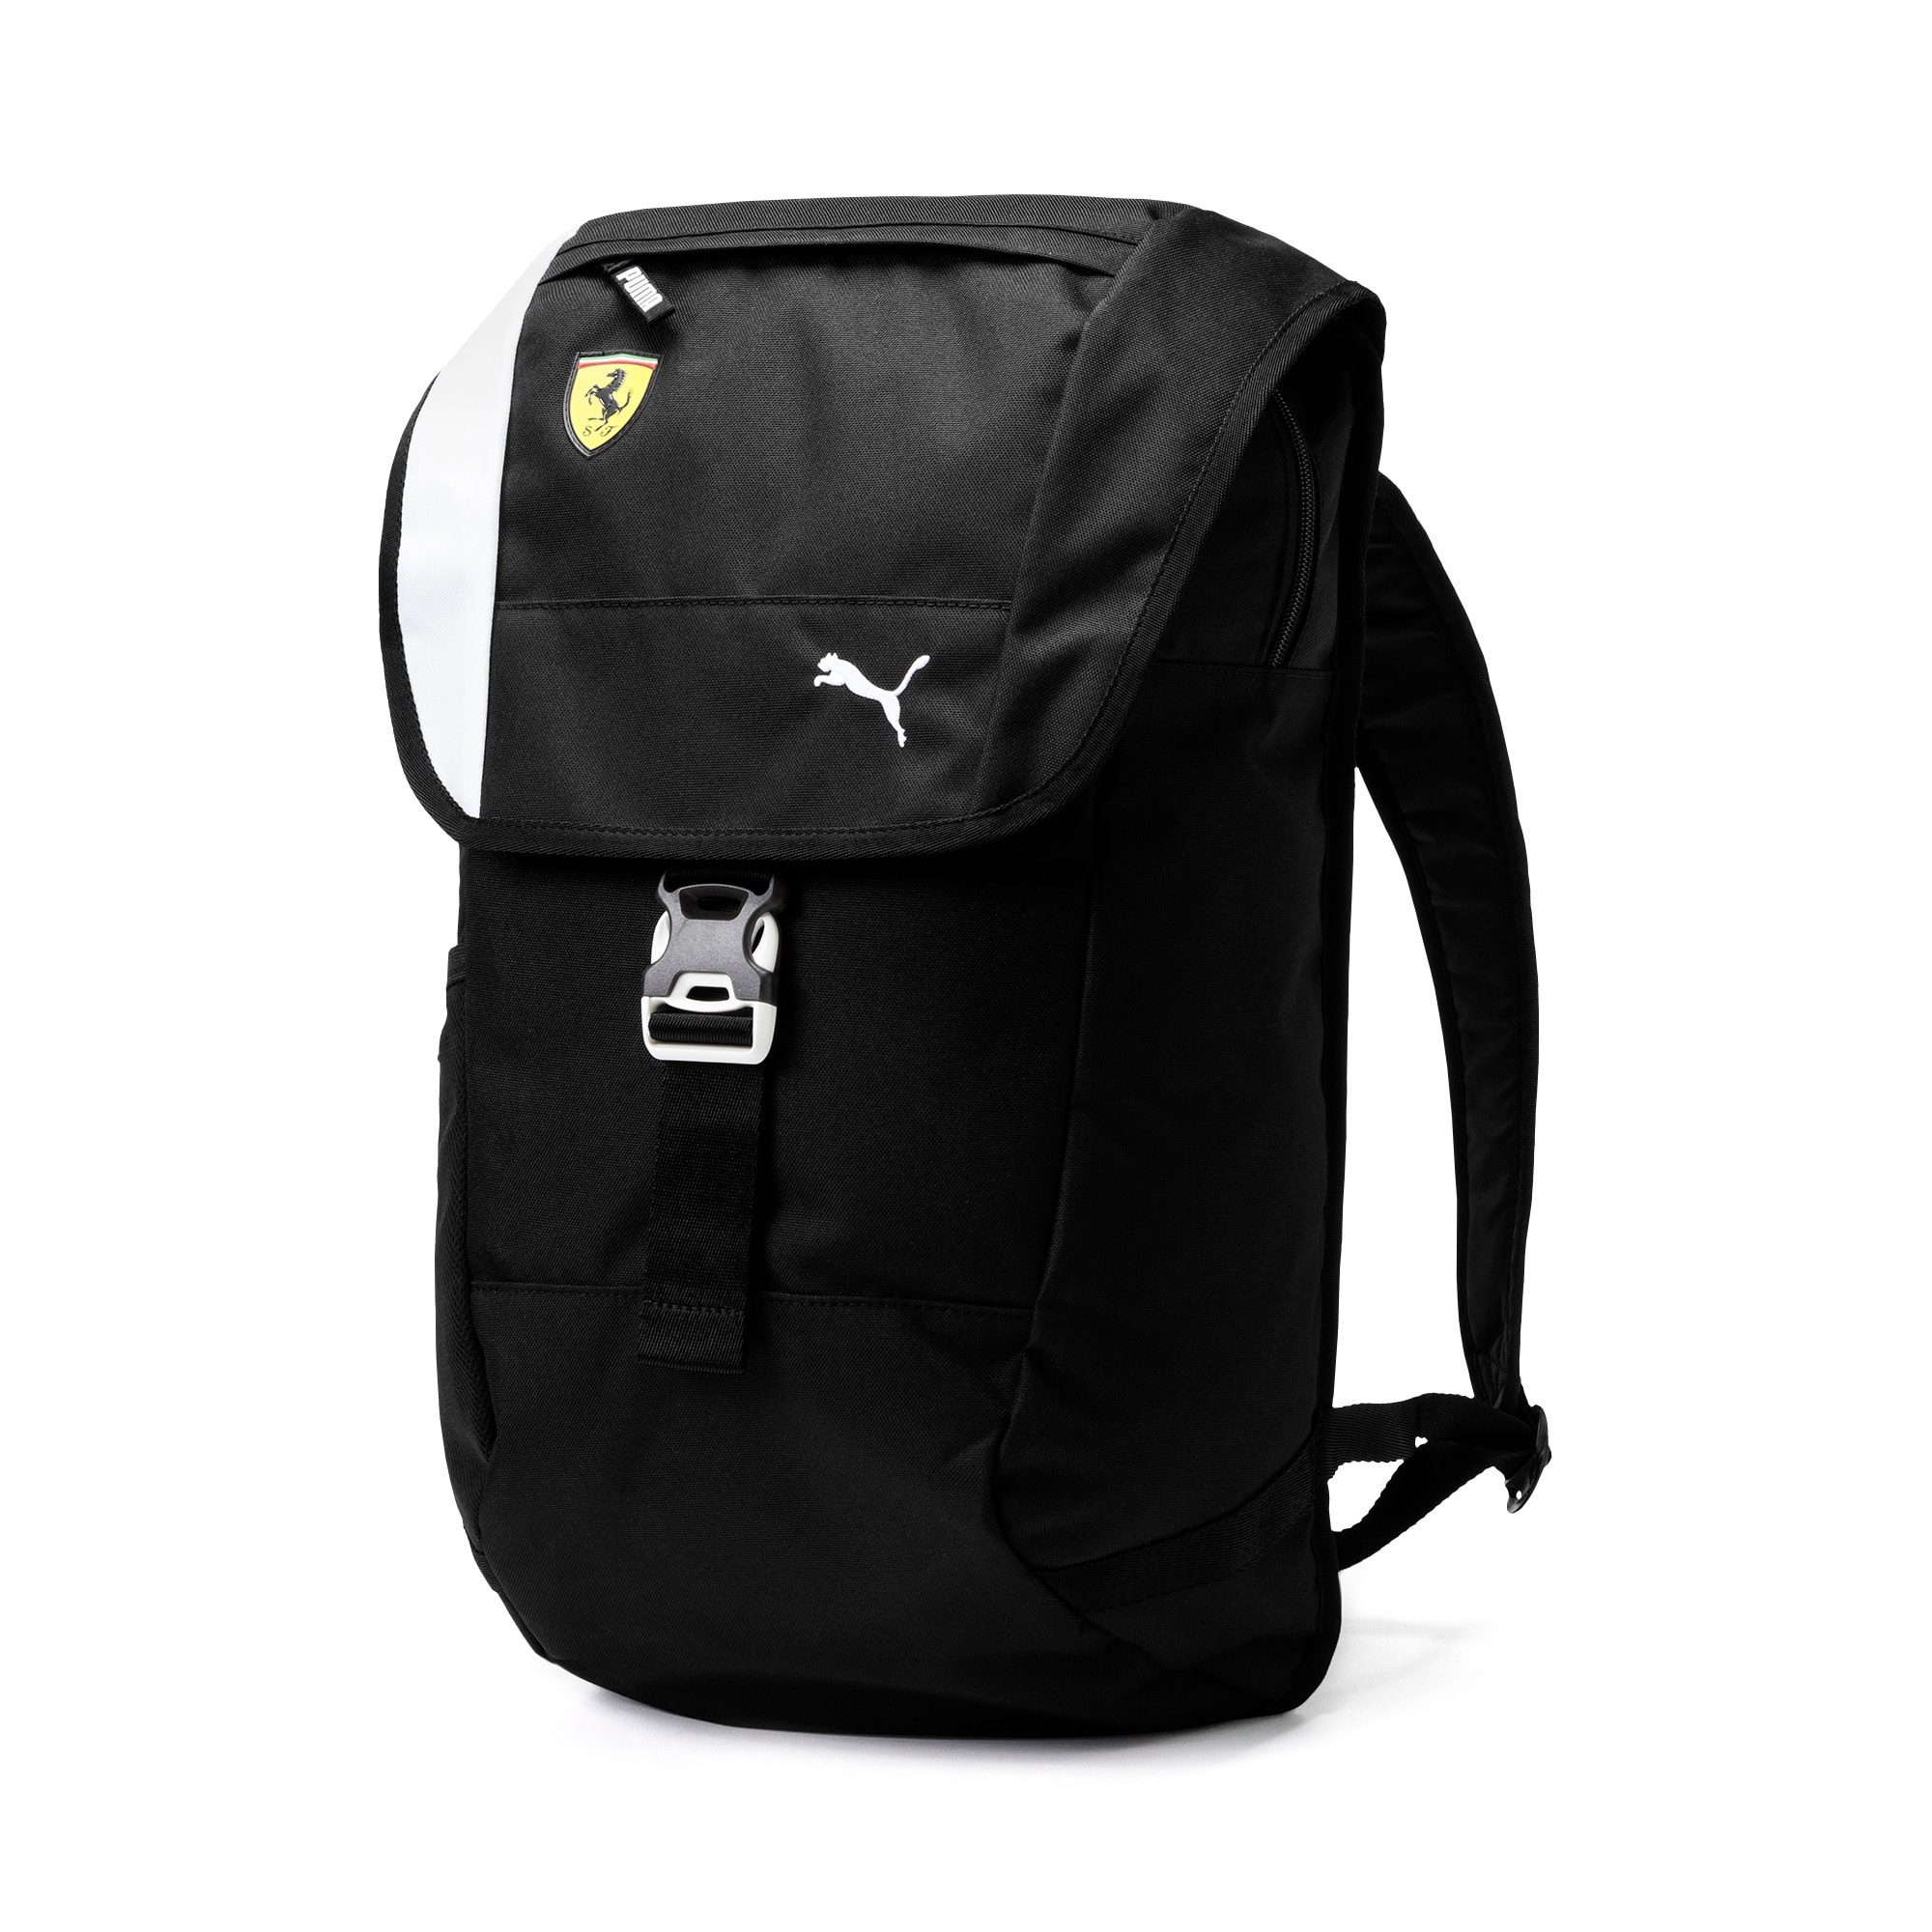 puma ferrari backpack 2016